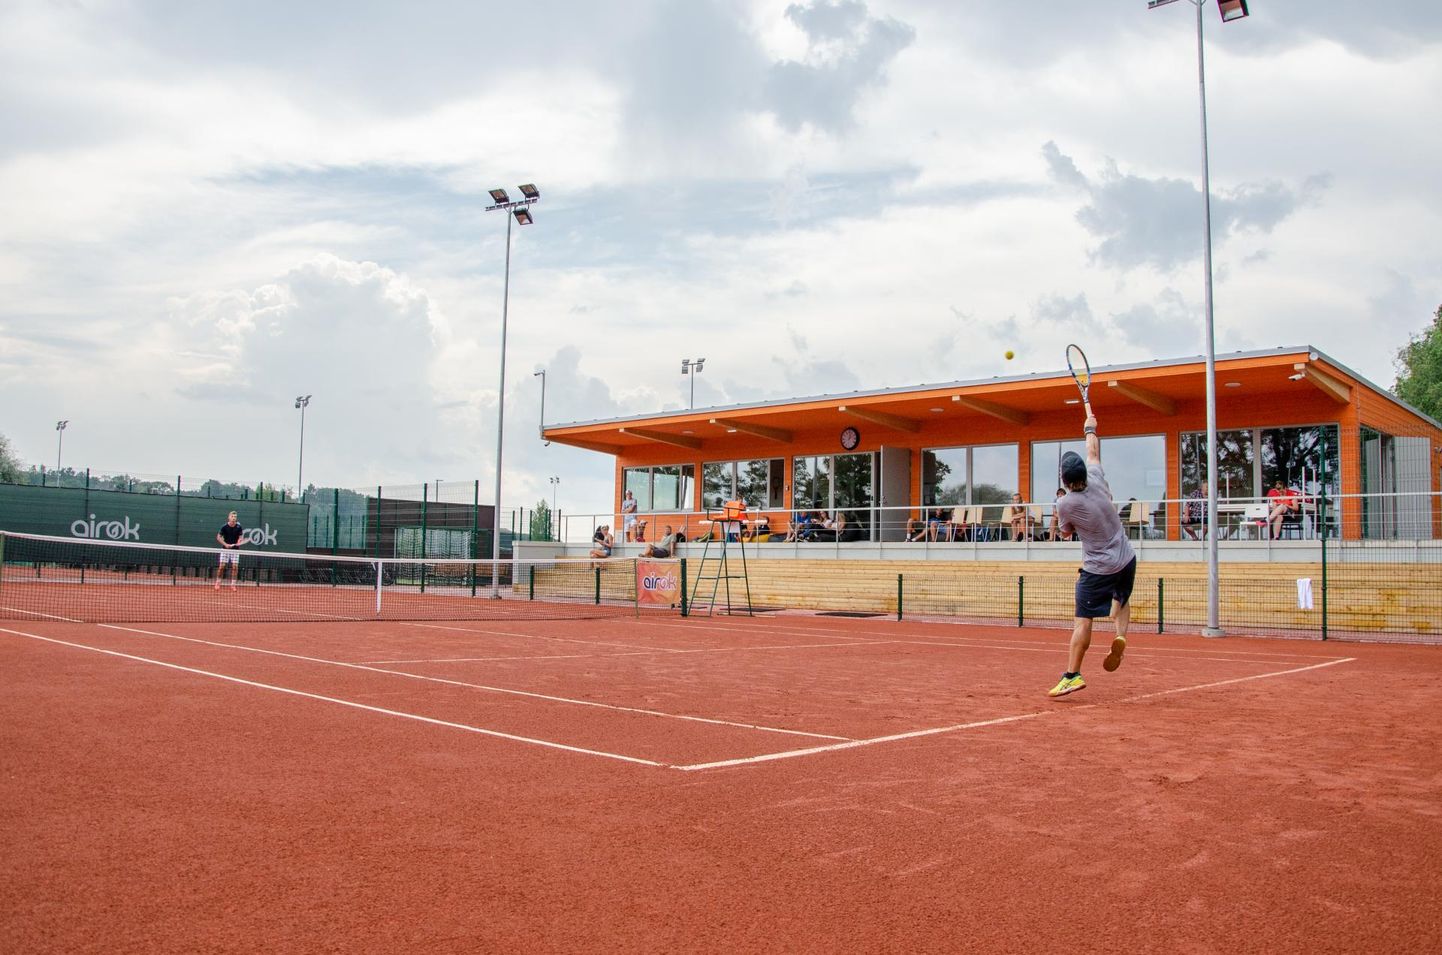 Täna pidulikult avatavatel Viljandi tennisväljakutel algas eile Eesti <em>grand prix</em>’ sarja kuuluv tenniseturniir «Viljandi Open», mis kestab pühapäevani.